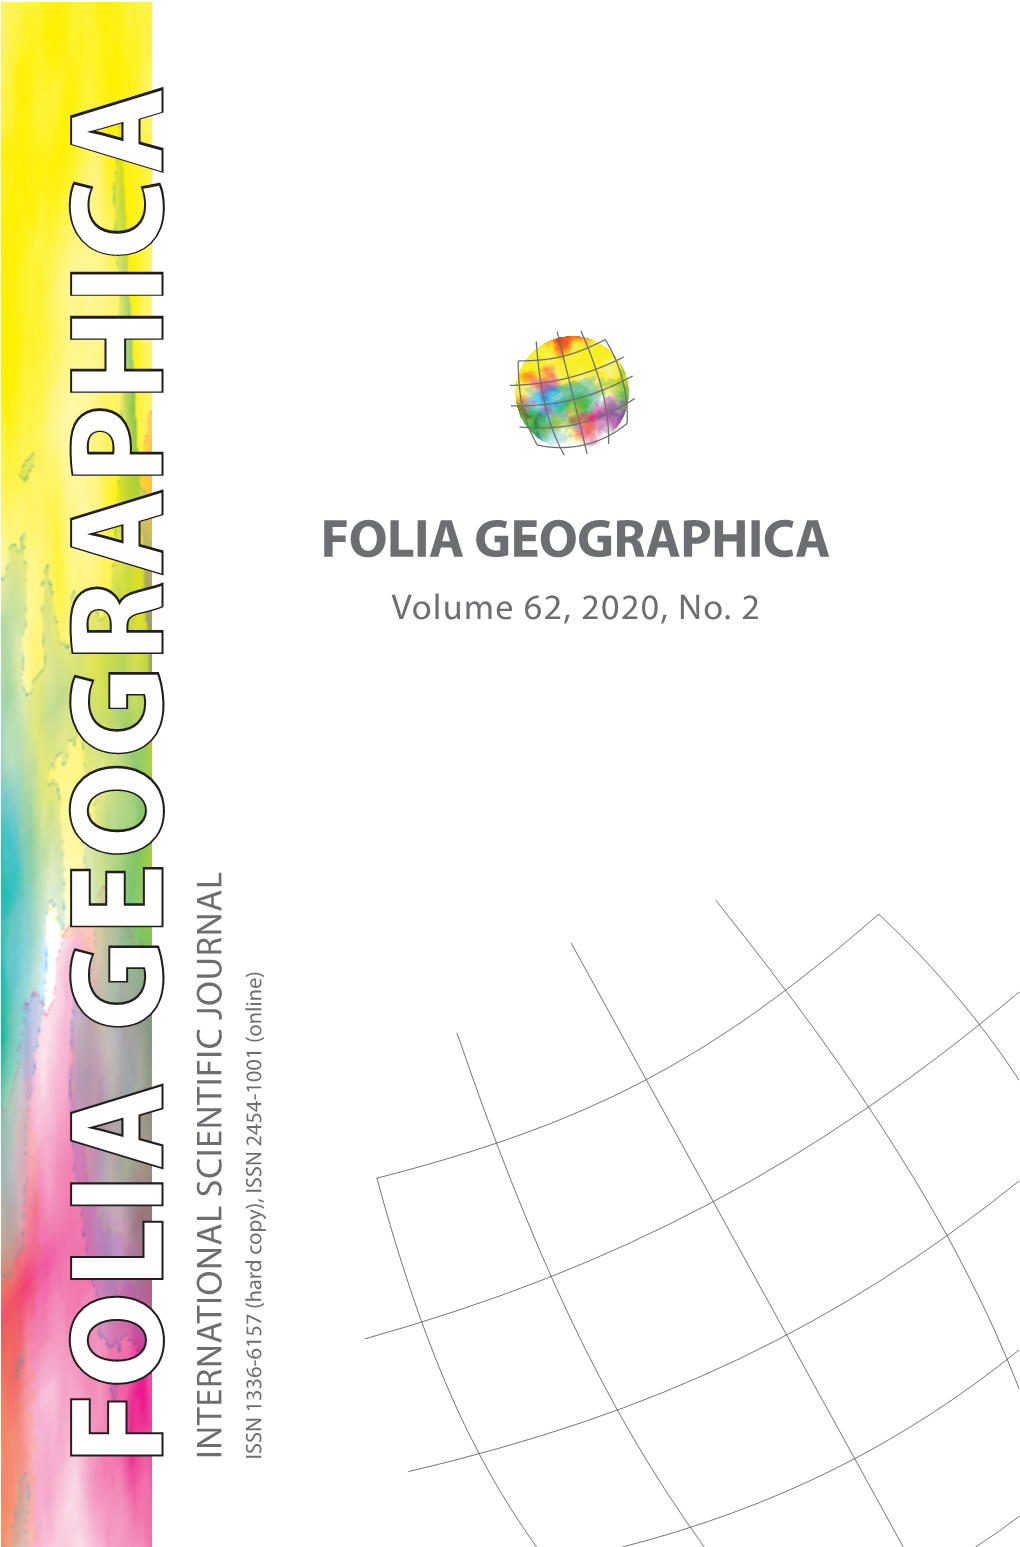 Folia Geographica 2020, Vol. 62., No. 2